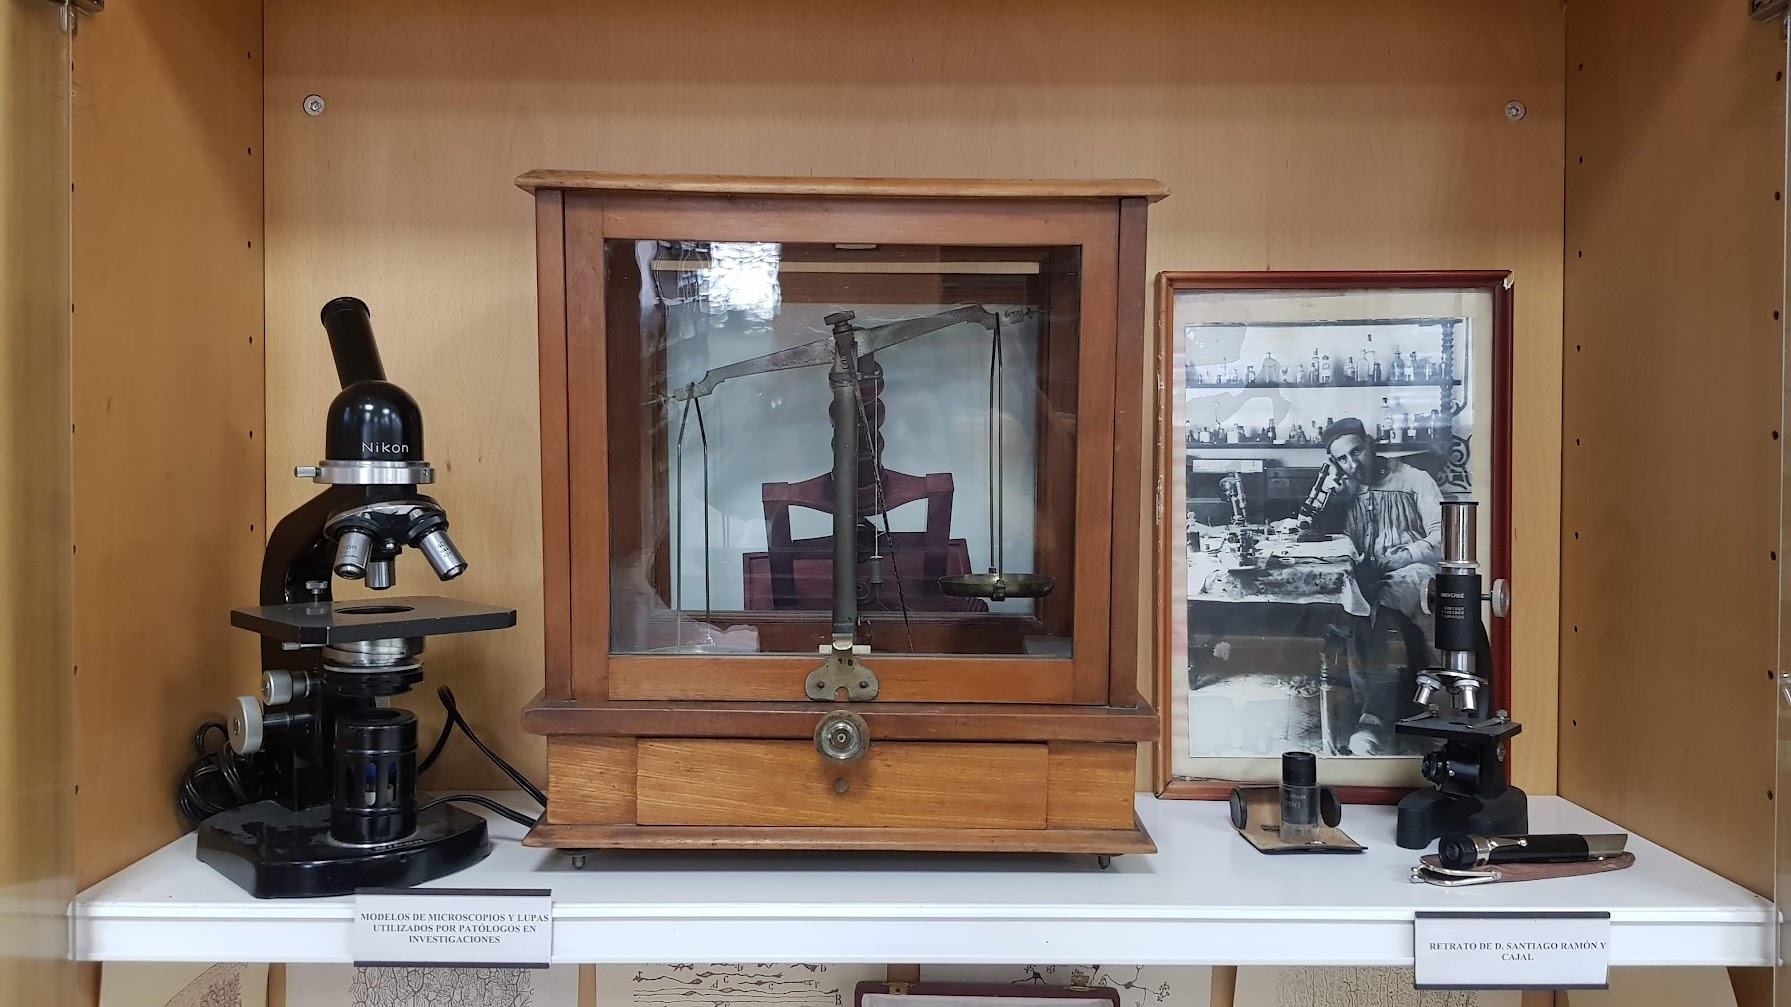 El rincón de Ramón y Cajal en la Biblioteca de Medicina